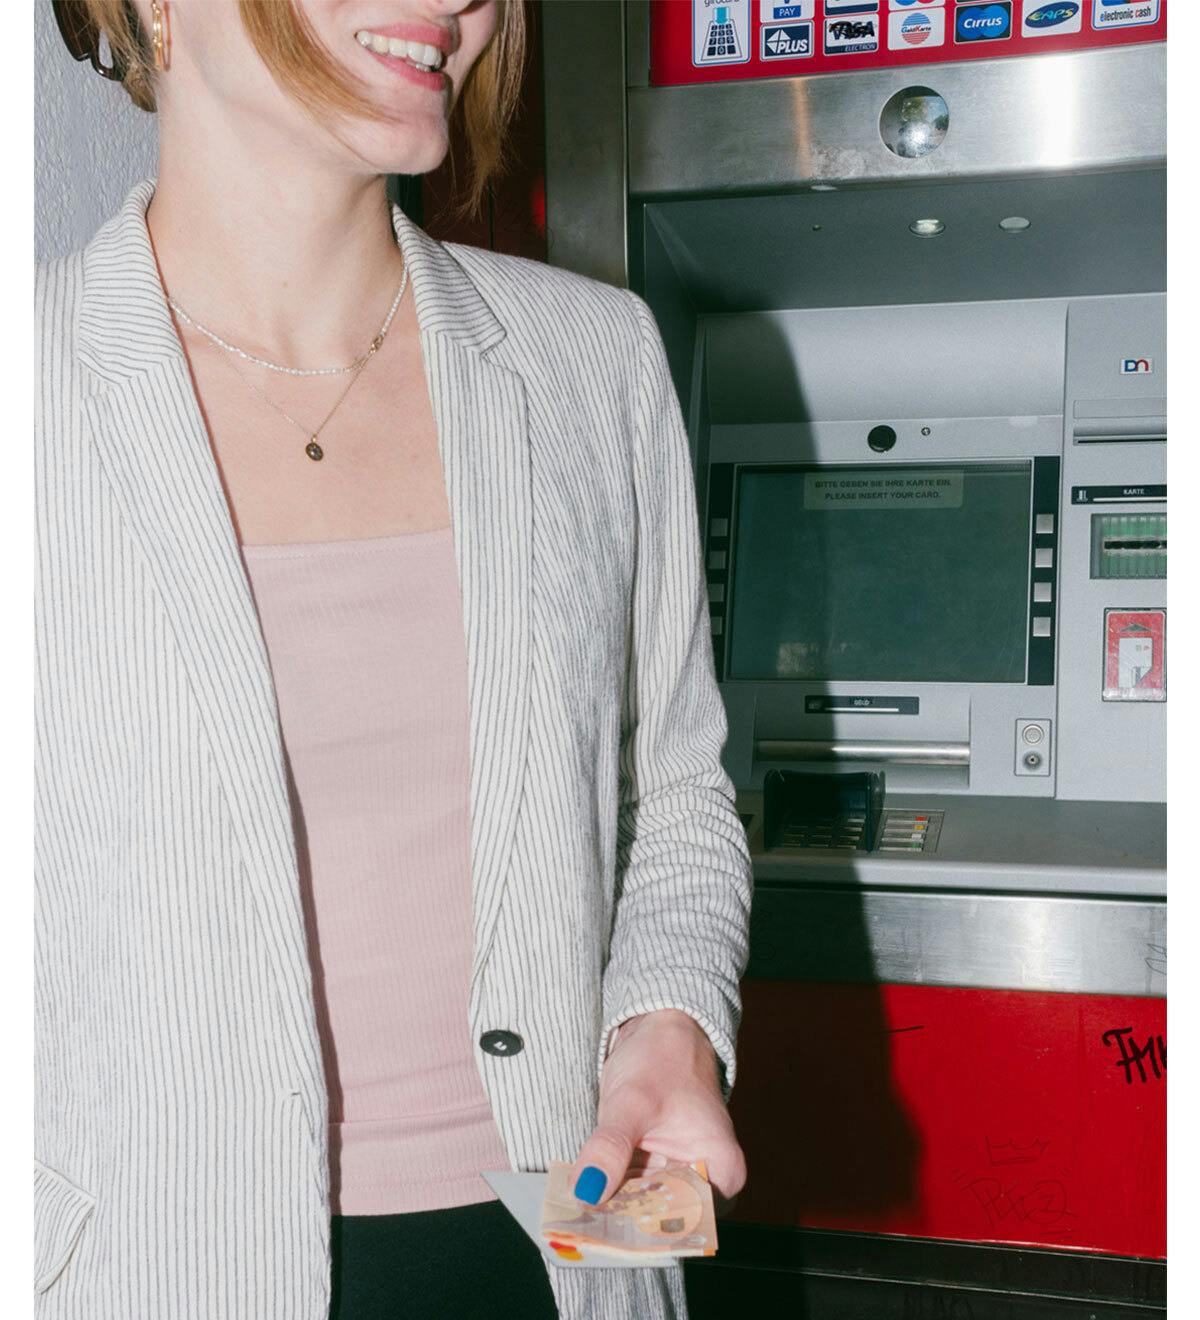 Una mujer sacando dinero del cajero automático.